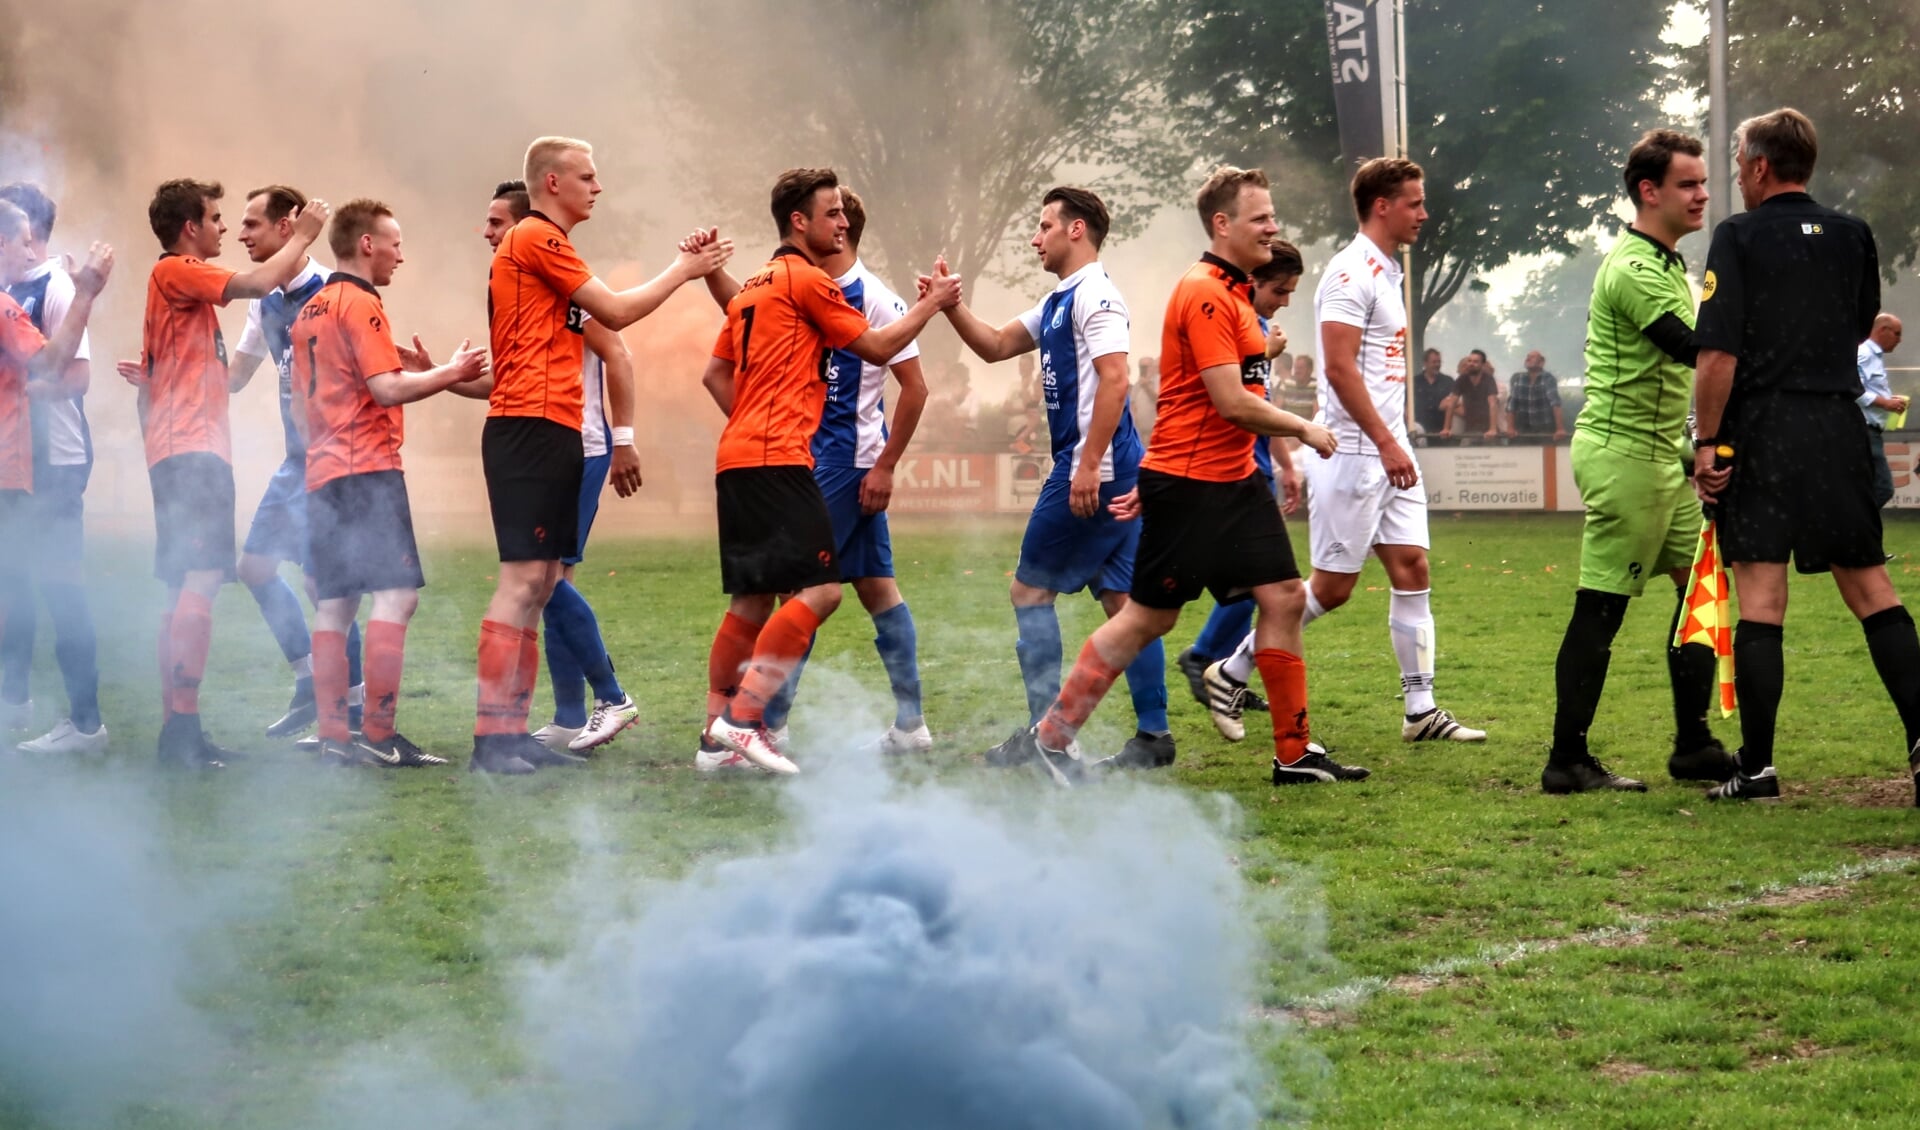 De derby tussen Pax en Keijenburgse Boys leverde in 2018 veel spektakel op. Tijdens het Quick-toernooi treffen de clubs elkaar opnieuw. Archieffoto: Luuk Stam